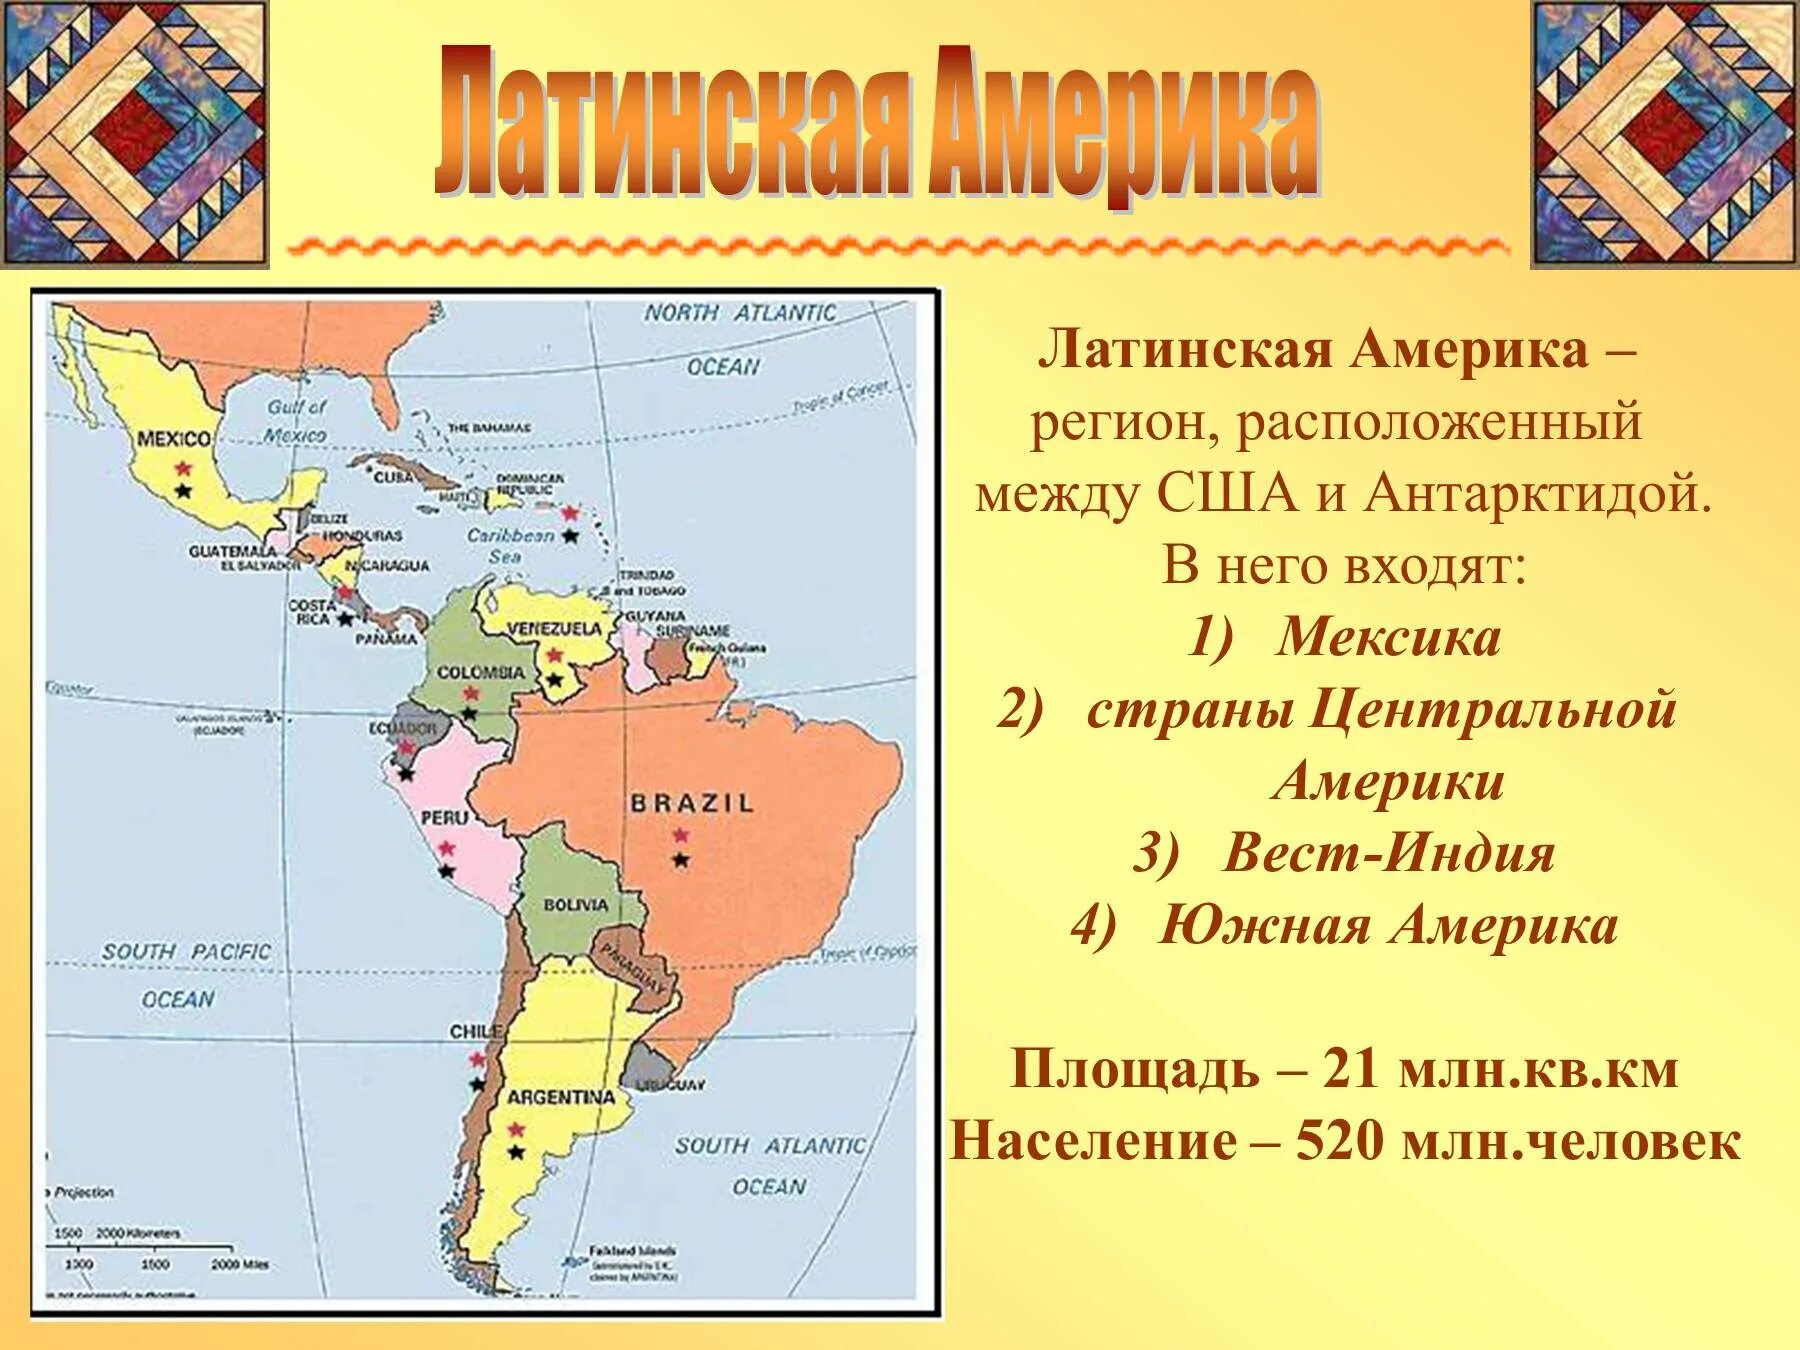 Политическая карта Латинской Америки субрегионы. Состав Латинской Америки карта. Государства на территории Латинской Америки. Границы всех государств Латинской Америки и их столицы на карте.